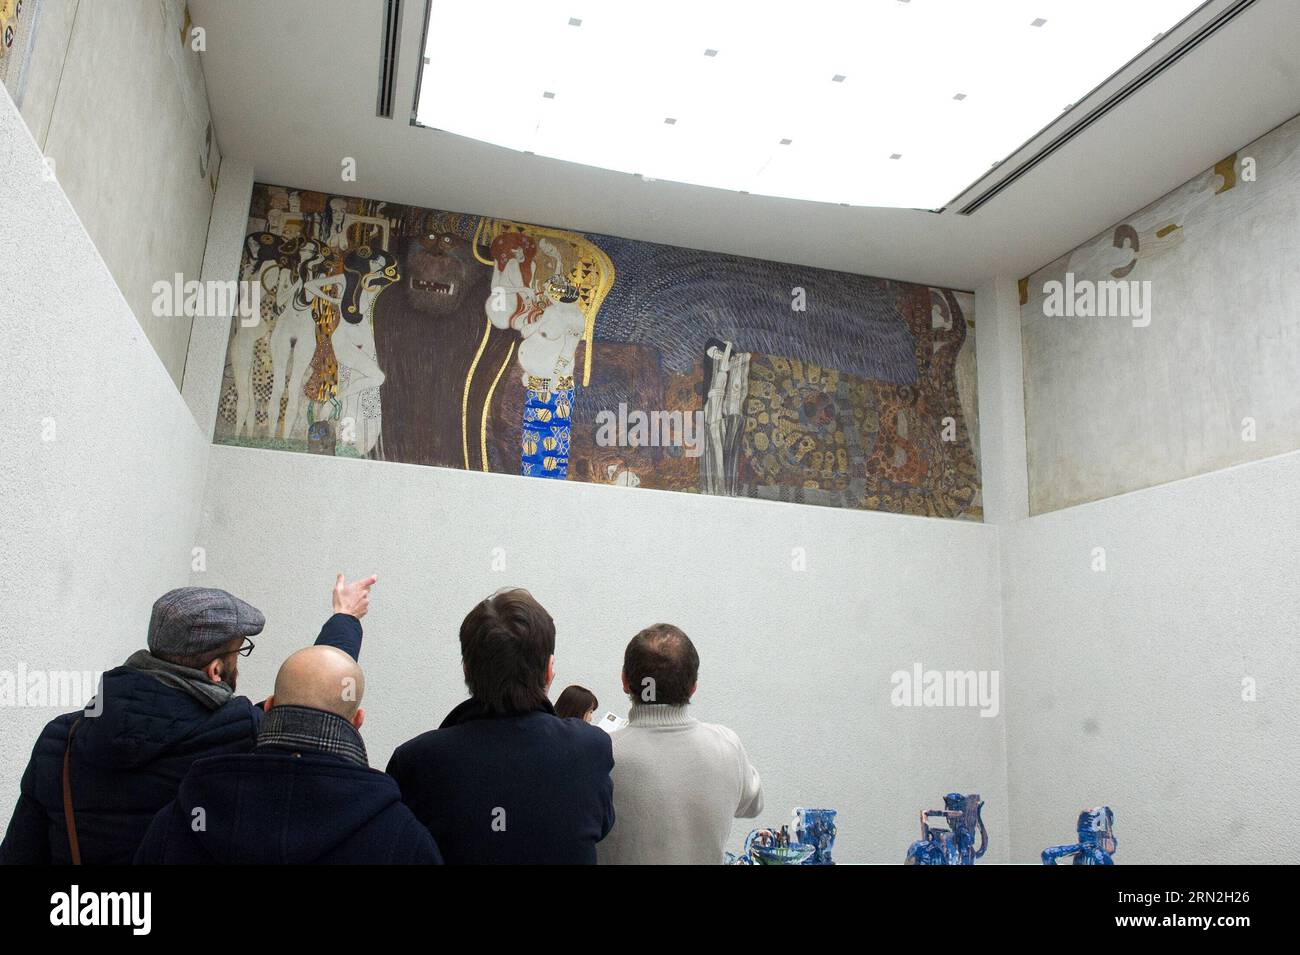 150307 -- VIENNE, le 6 mars 2015 -- les visiteurs voient la Frise Beethoven au bâtiment de la Sécession de Vienne, à Vienne, Autriche, le 6 mars 2015. L une des œuvres d art les plus précieuses d Autriche, Beethoven Frieze de Gustav Klimt, semble susceptible de rester dans le pays pour le moment après qu un panel d experts a rejeté vendredi les demandes de restitution des descendants de ses anciens propriétaires juifs. Zhf AUTRICHE-VIENNE-BEETHOVEN FRISE-RESTITUTION-ÉVITER QianxYi PUBLICATIONxNOTxINxCHN Banque D'Images